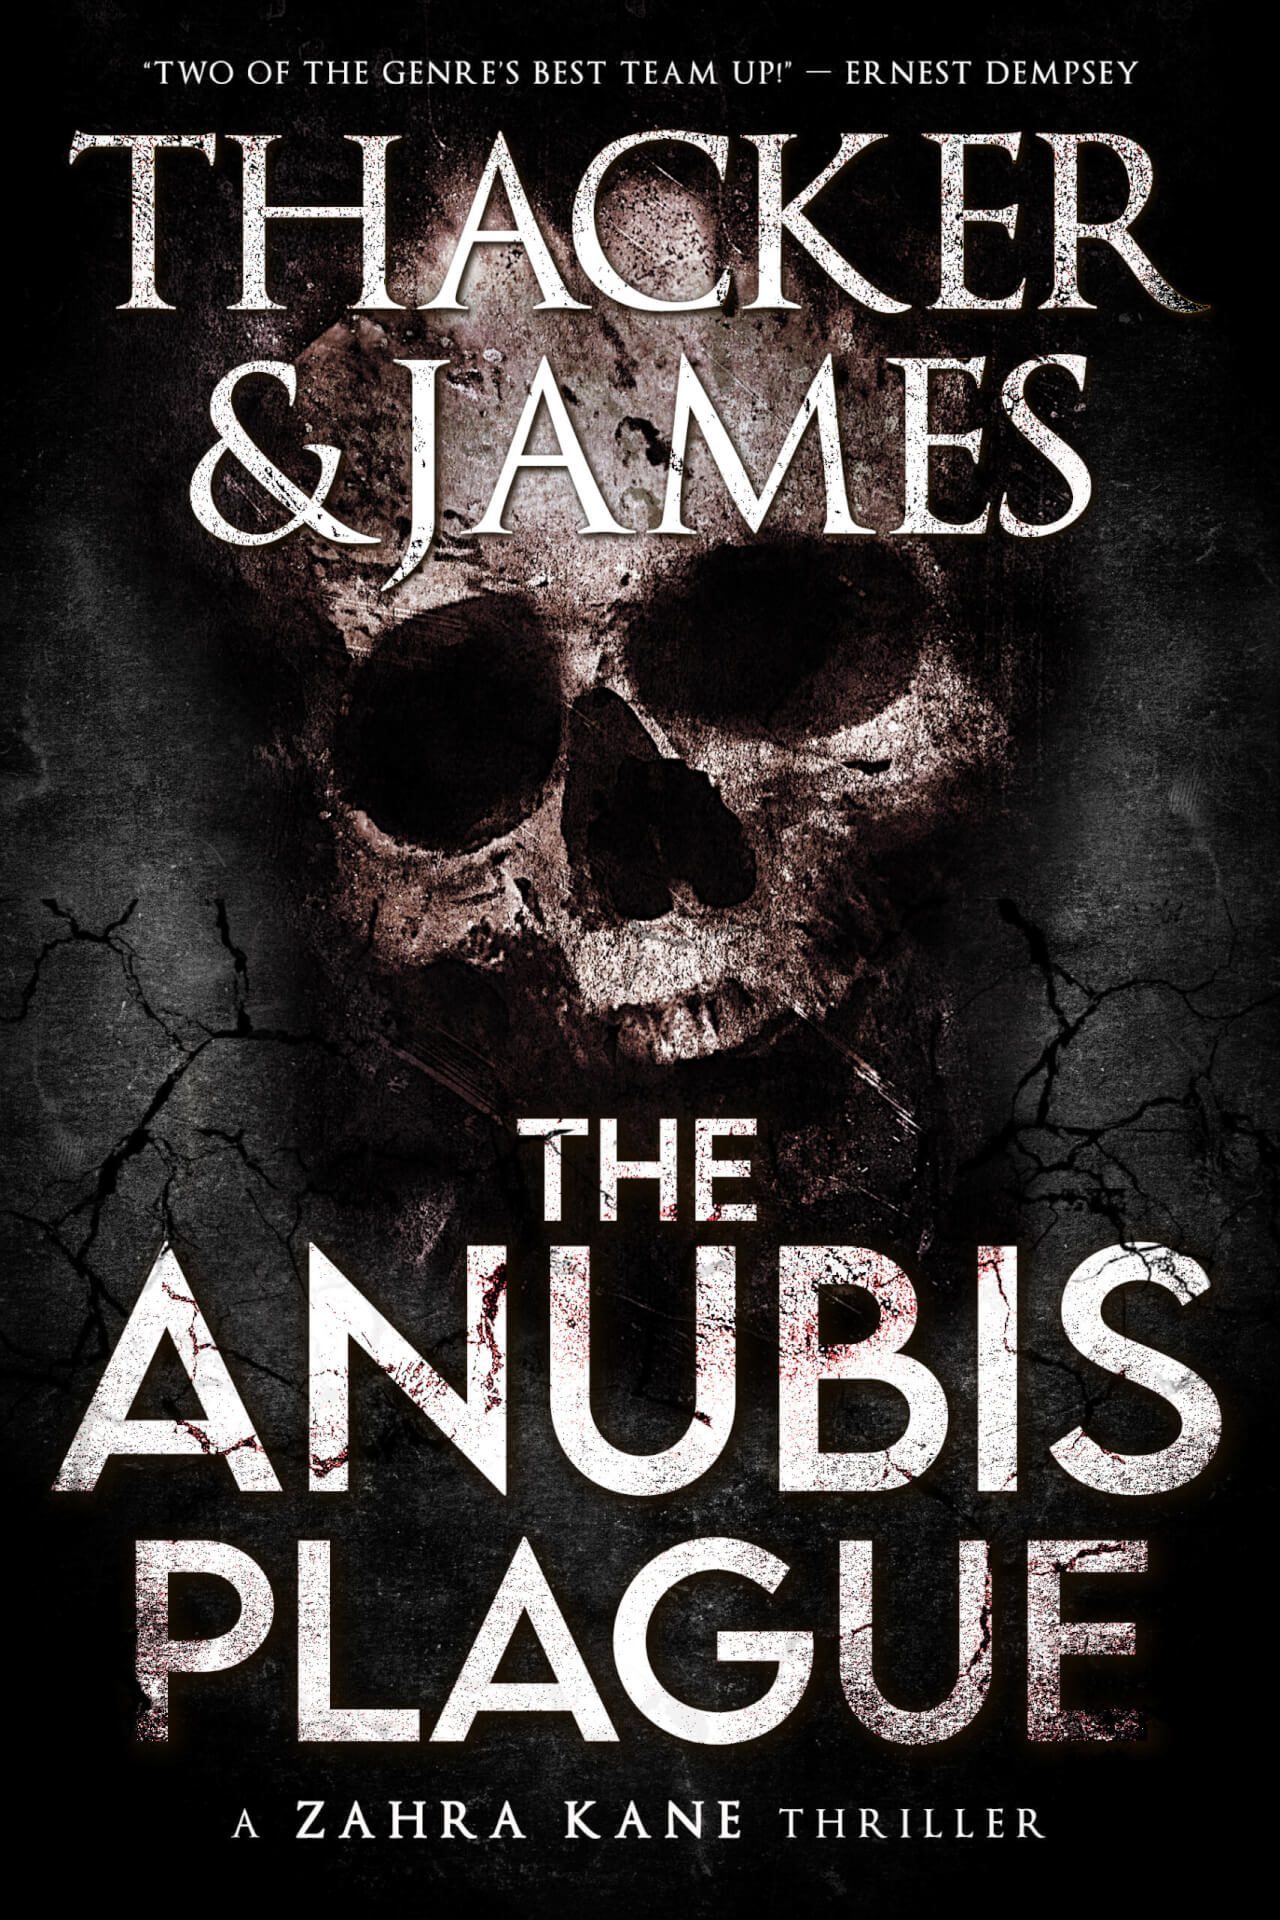 The Anubis Plague